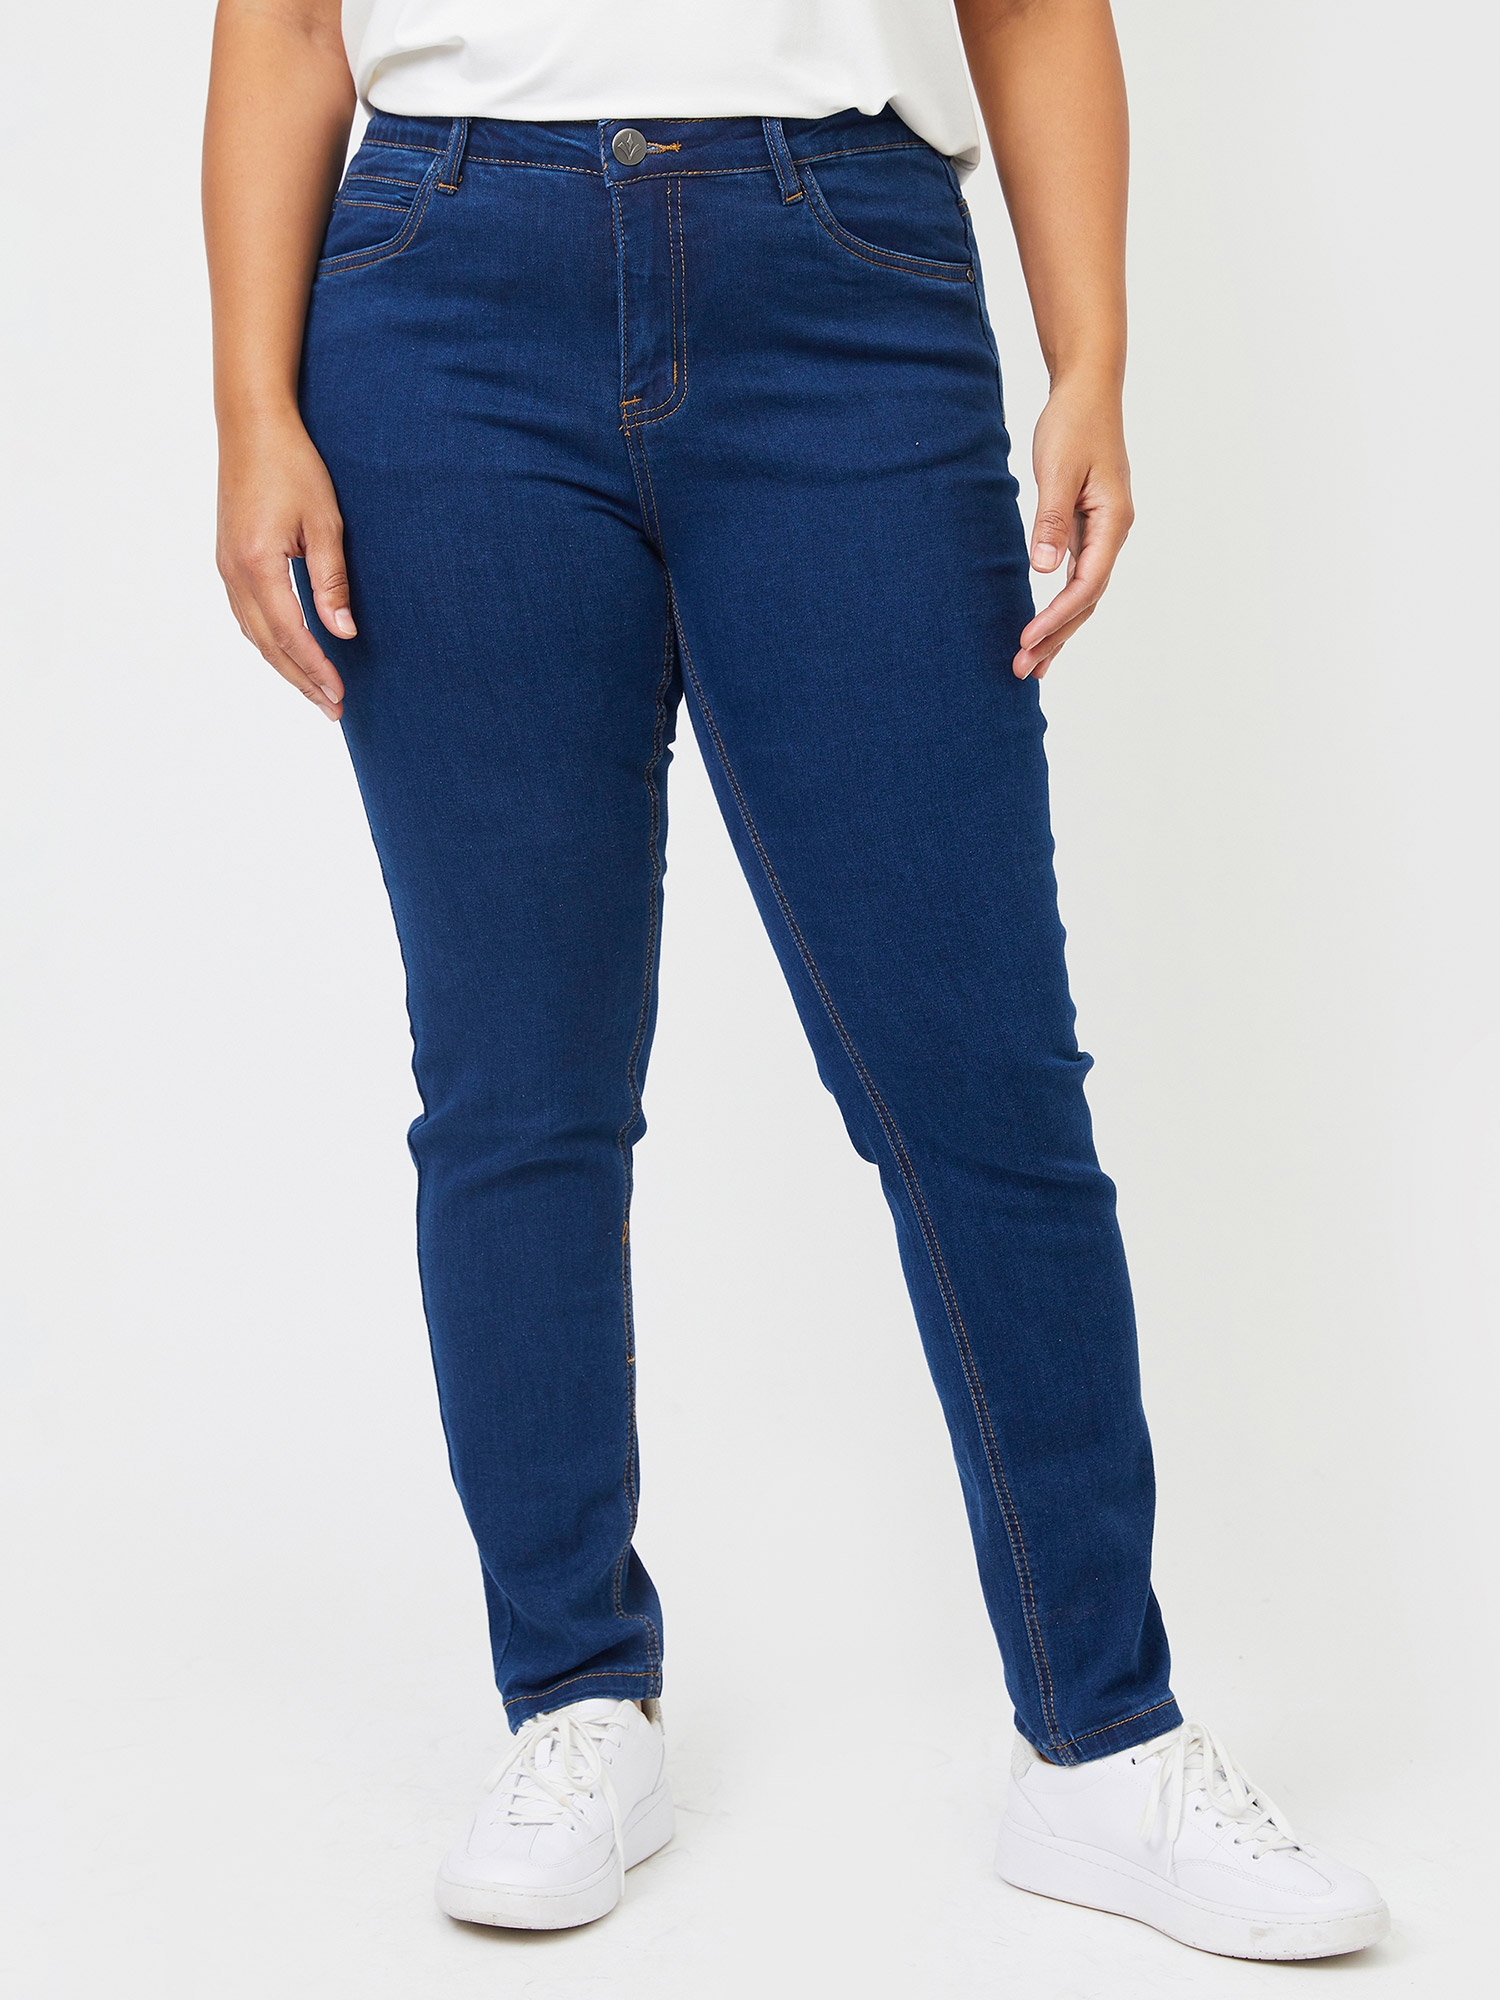 MILAN - Blå jeans fra Adia